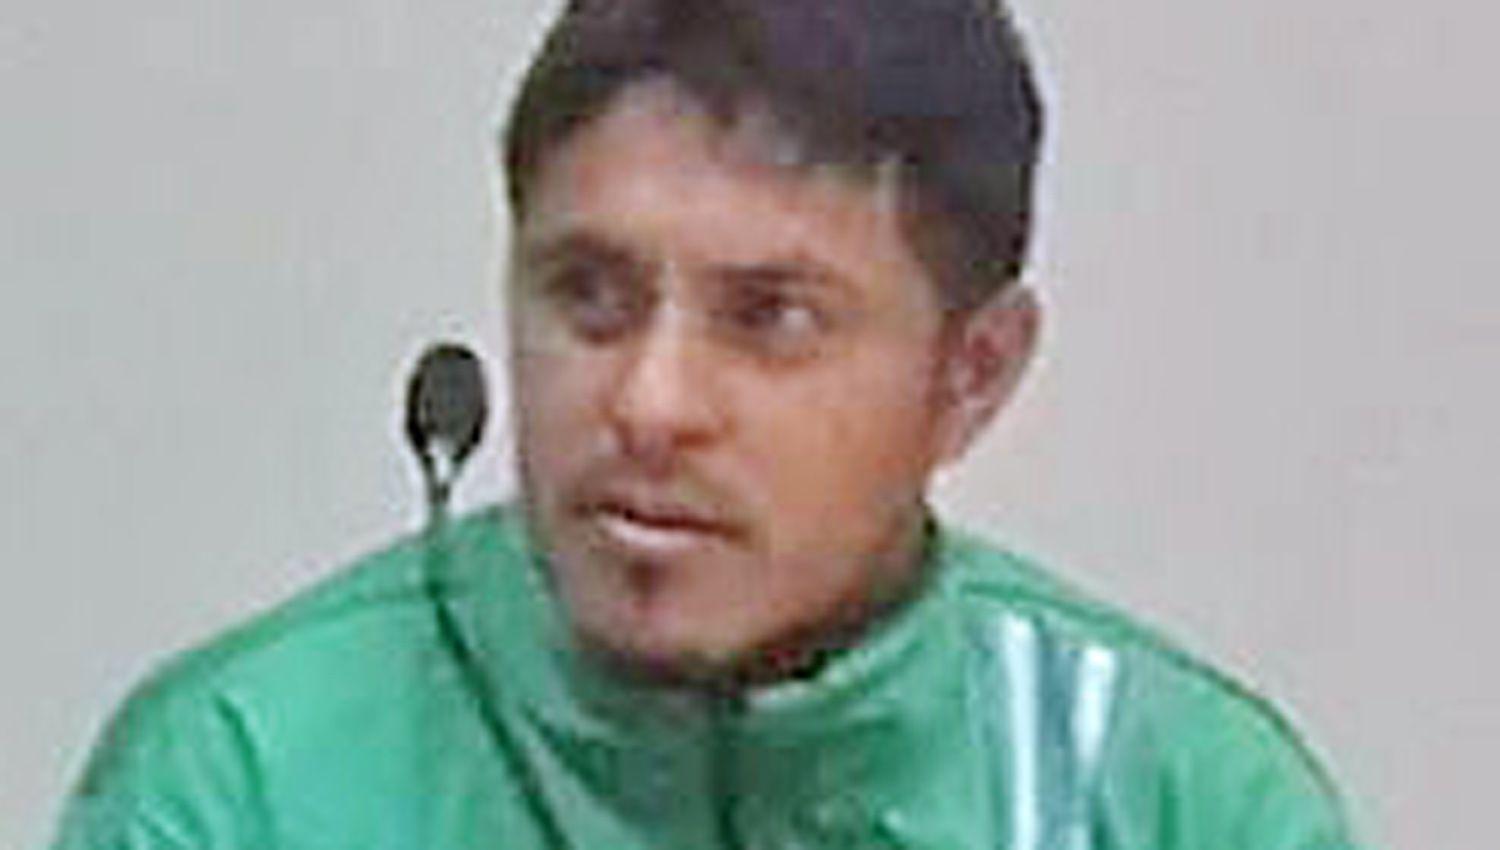 Manuel Alberto Salvatierra